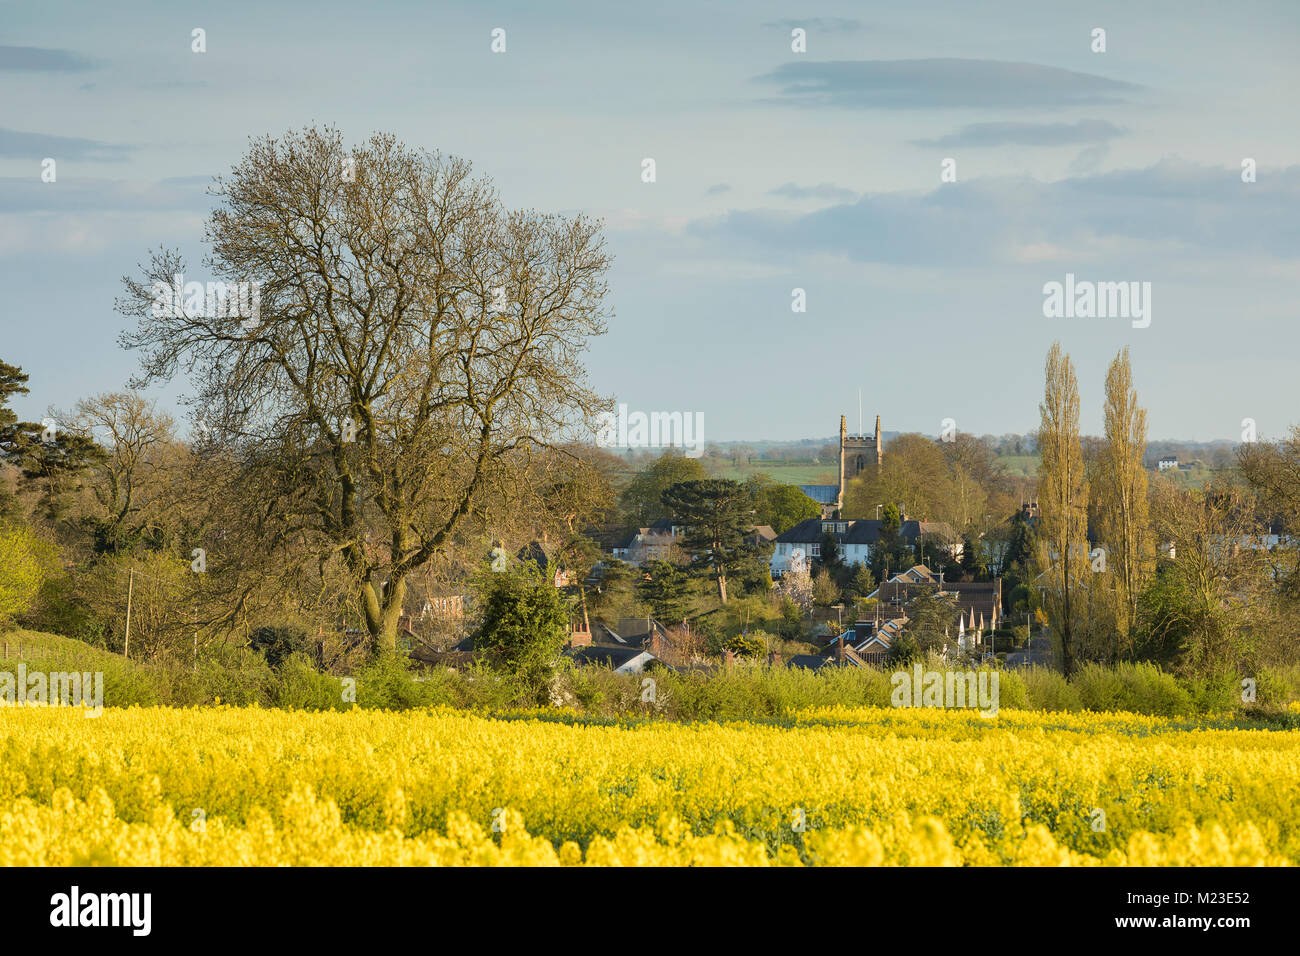 Una imagen de la aldea rural de Kibworth Harcourt, Leicestershire en una hermosa tarde de primavera Inglaterra, Reino Unido. Foto de stock